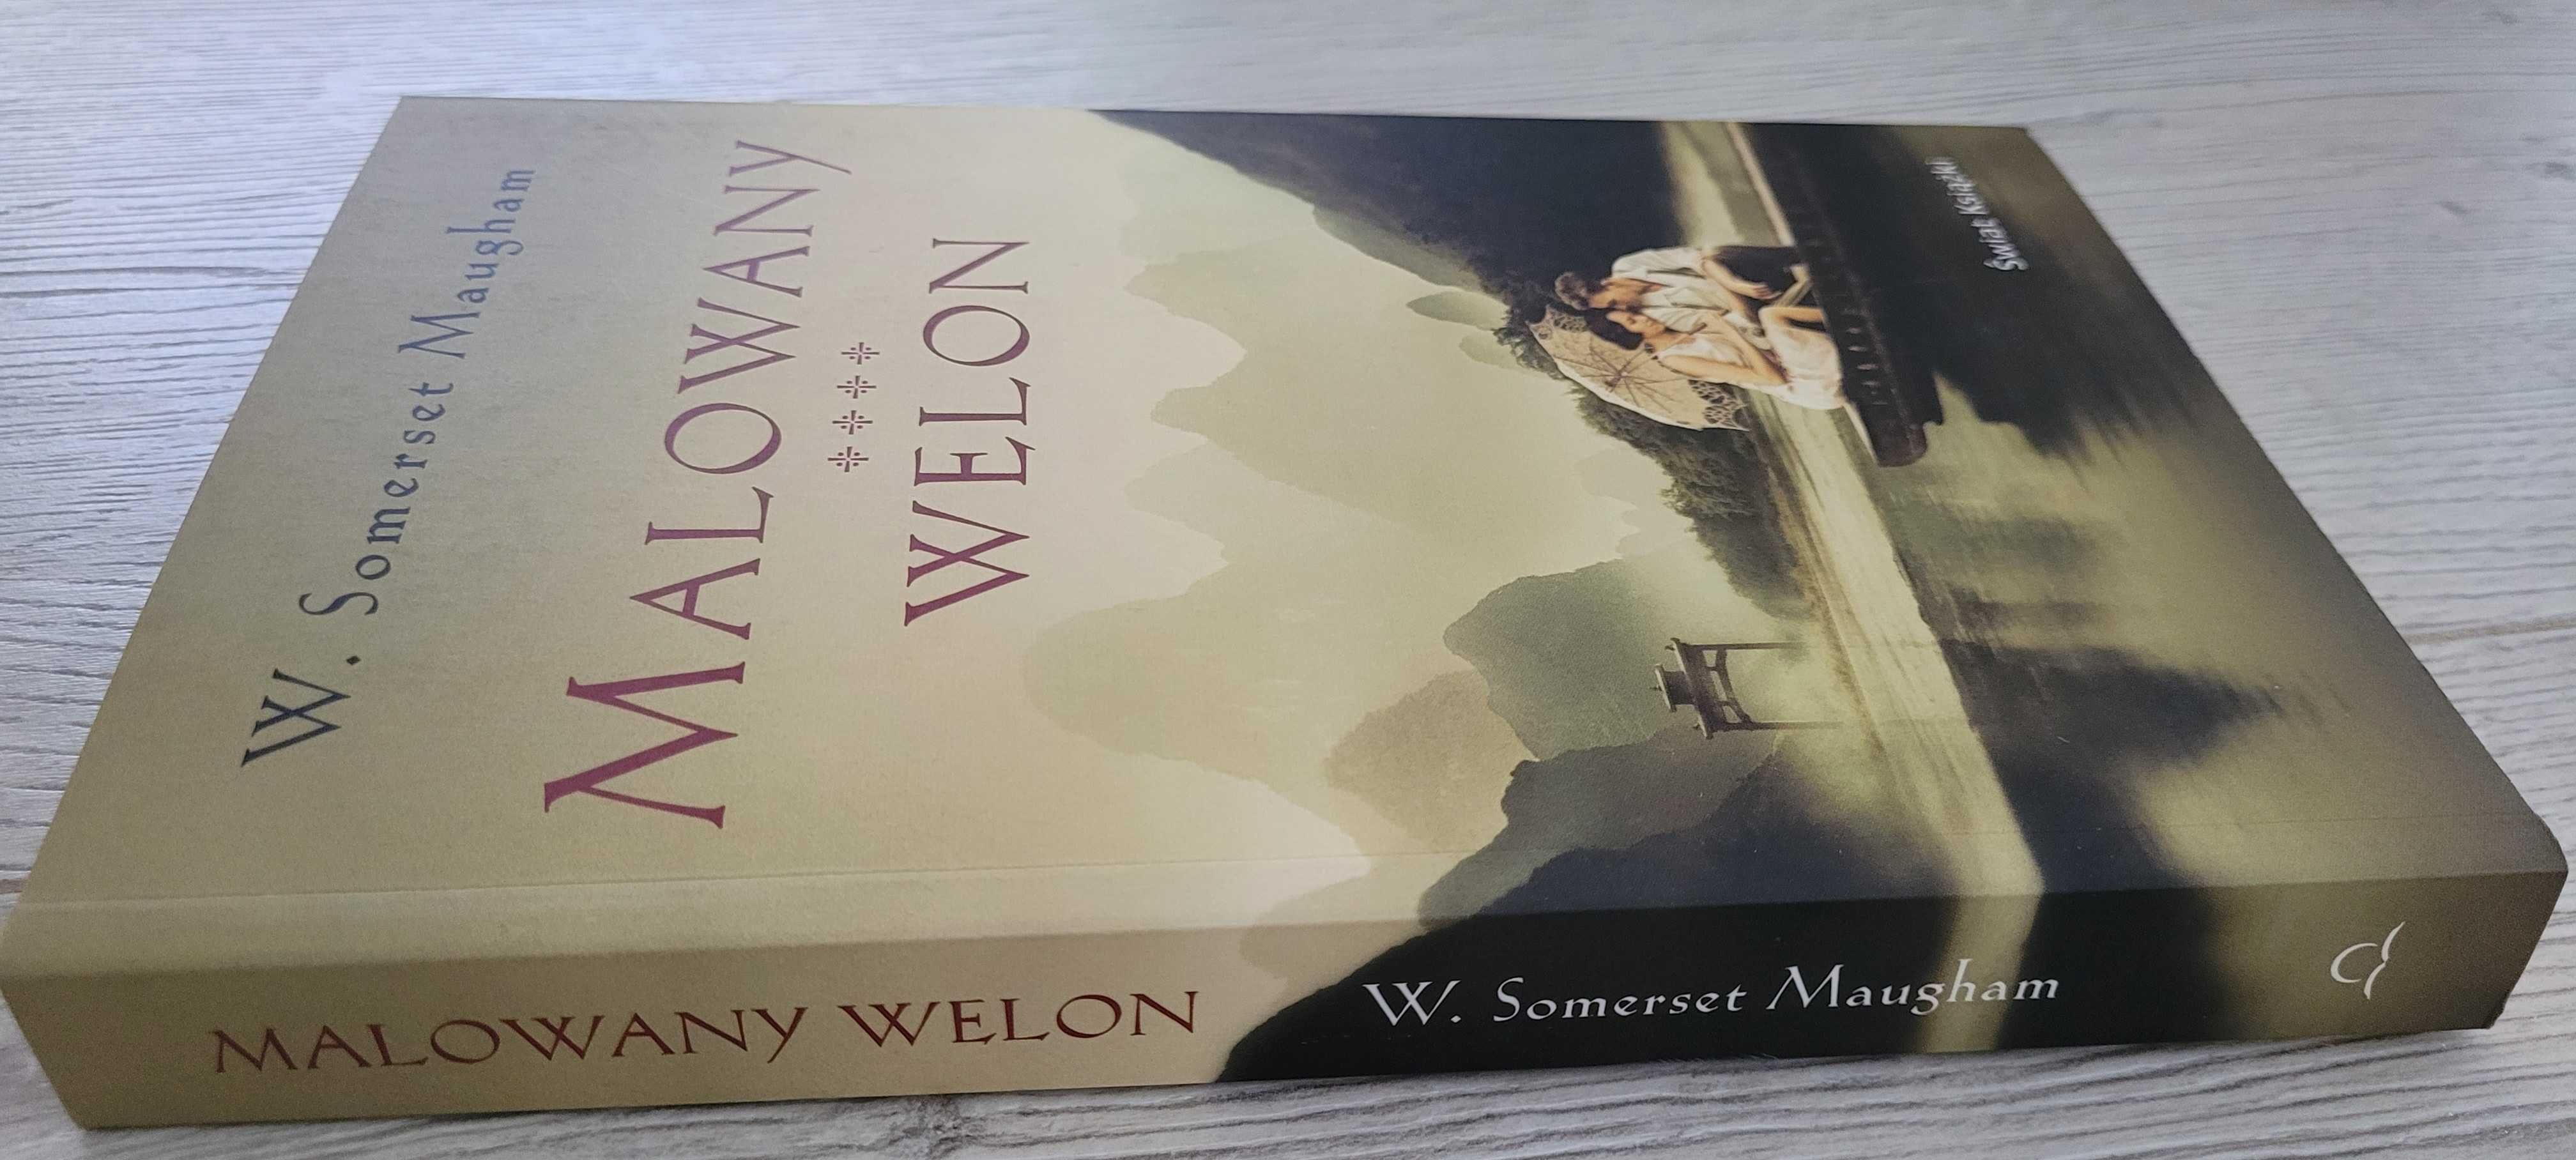 "Malowany welon" W. Somerset Maugham